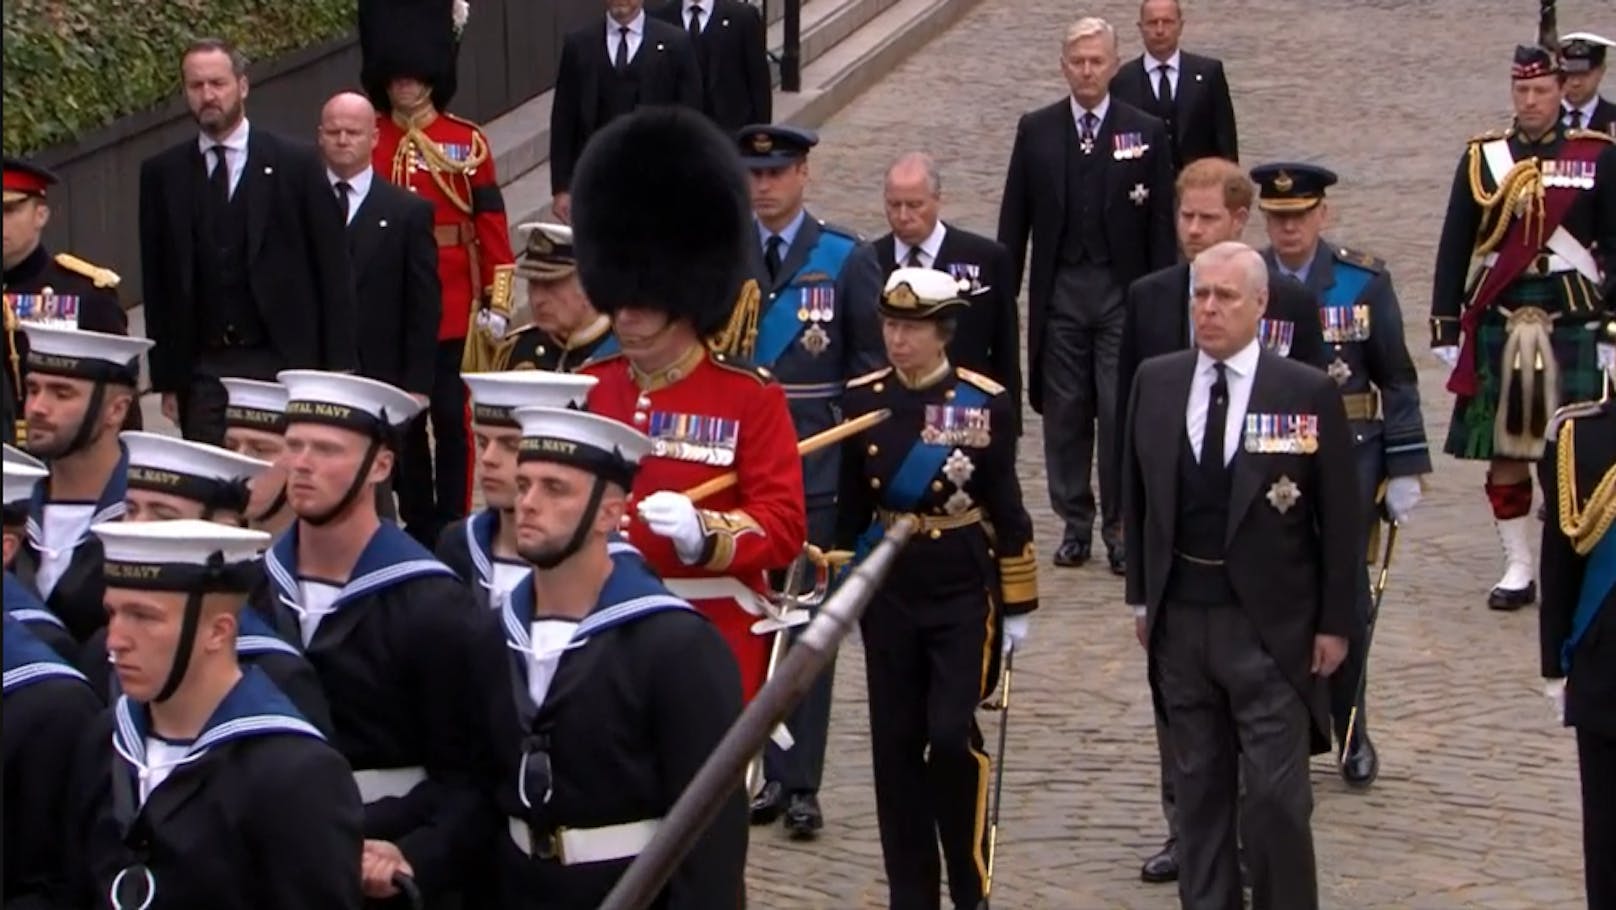 König Charles, seine Geschwister und Prinz William und Prinz Harry gehen hinter dem Sarg der Queen.